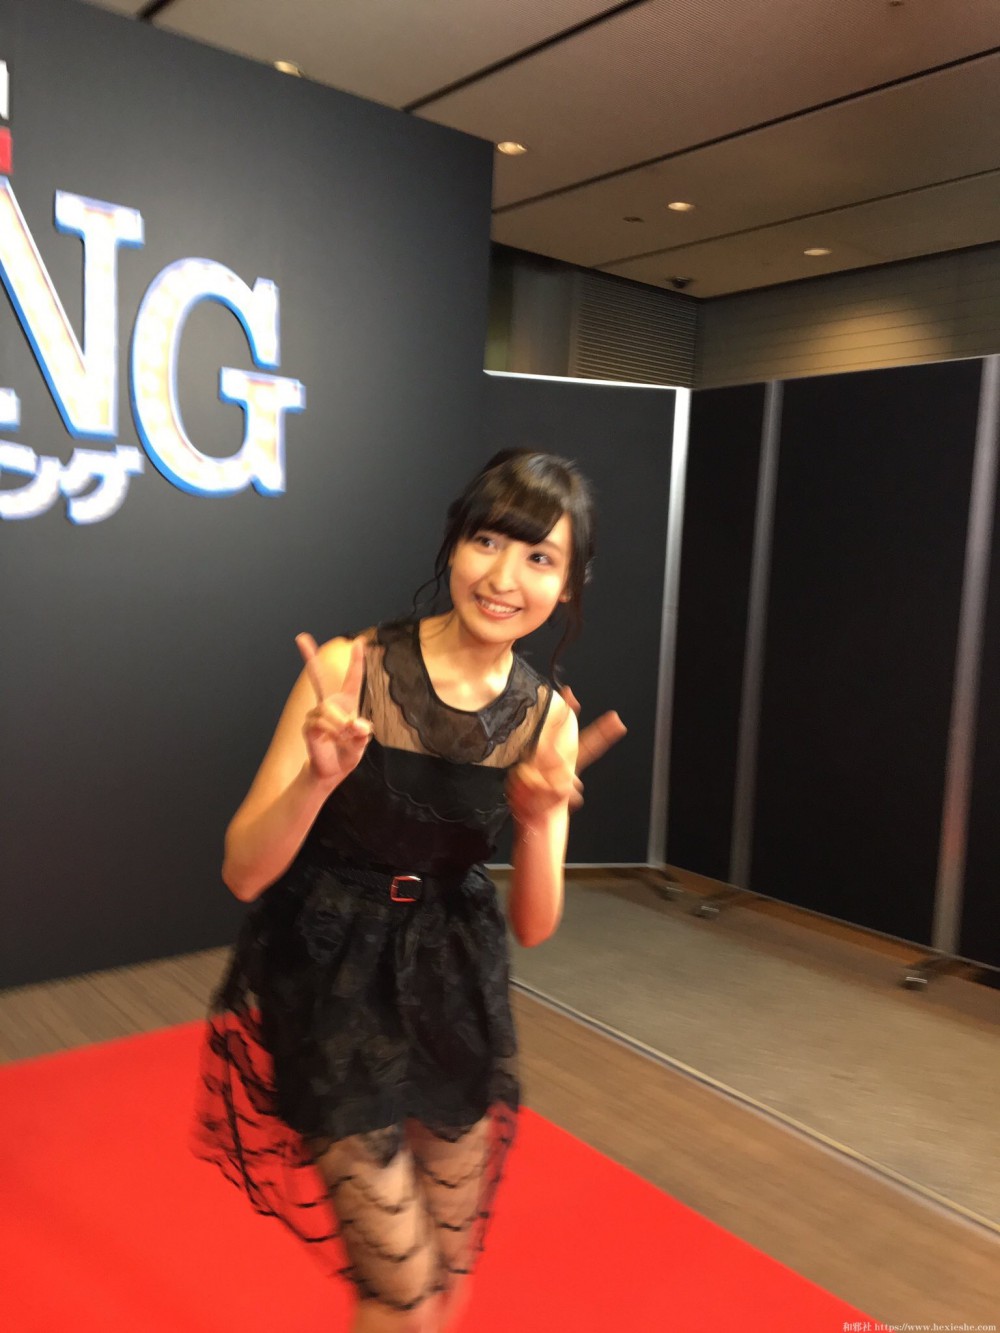 佐仓绫音参与『欢乐好声音』日本首映礼-美人声优走上红地毯